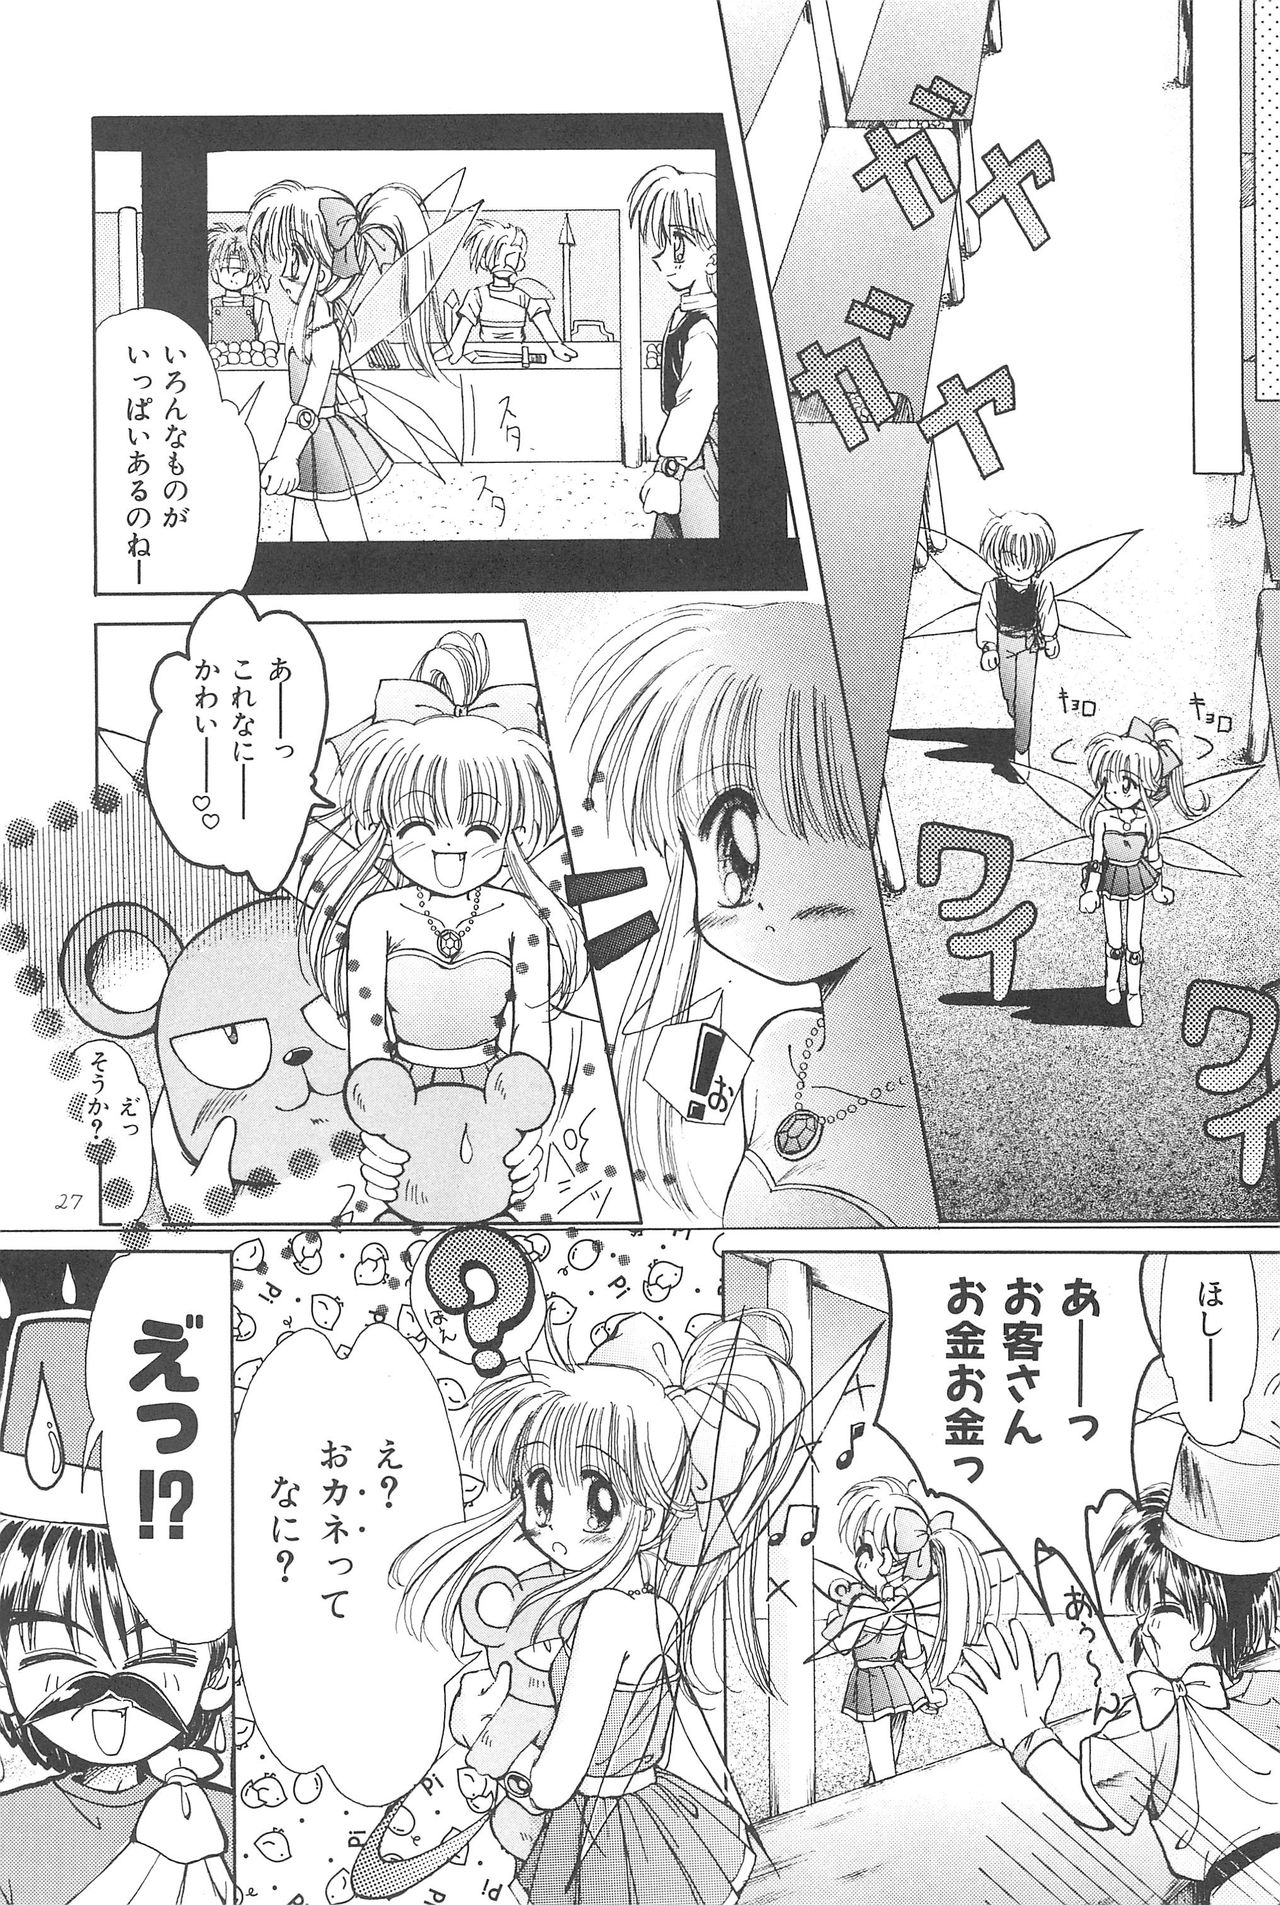 (CR23) [PHOENIX PROJECT (Kamikaze Makoto)] Okosama Lunch Original 1 page 29 full